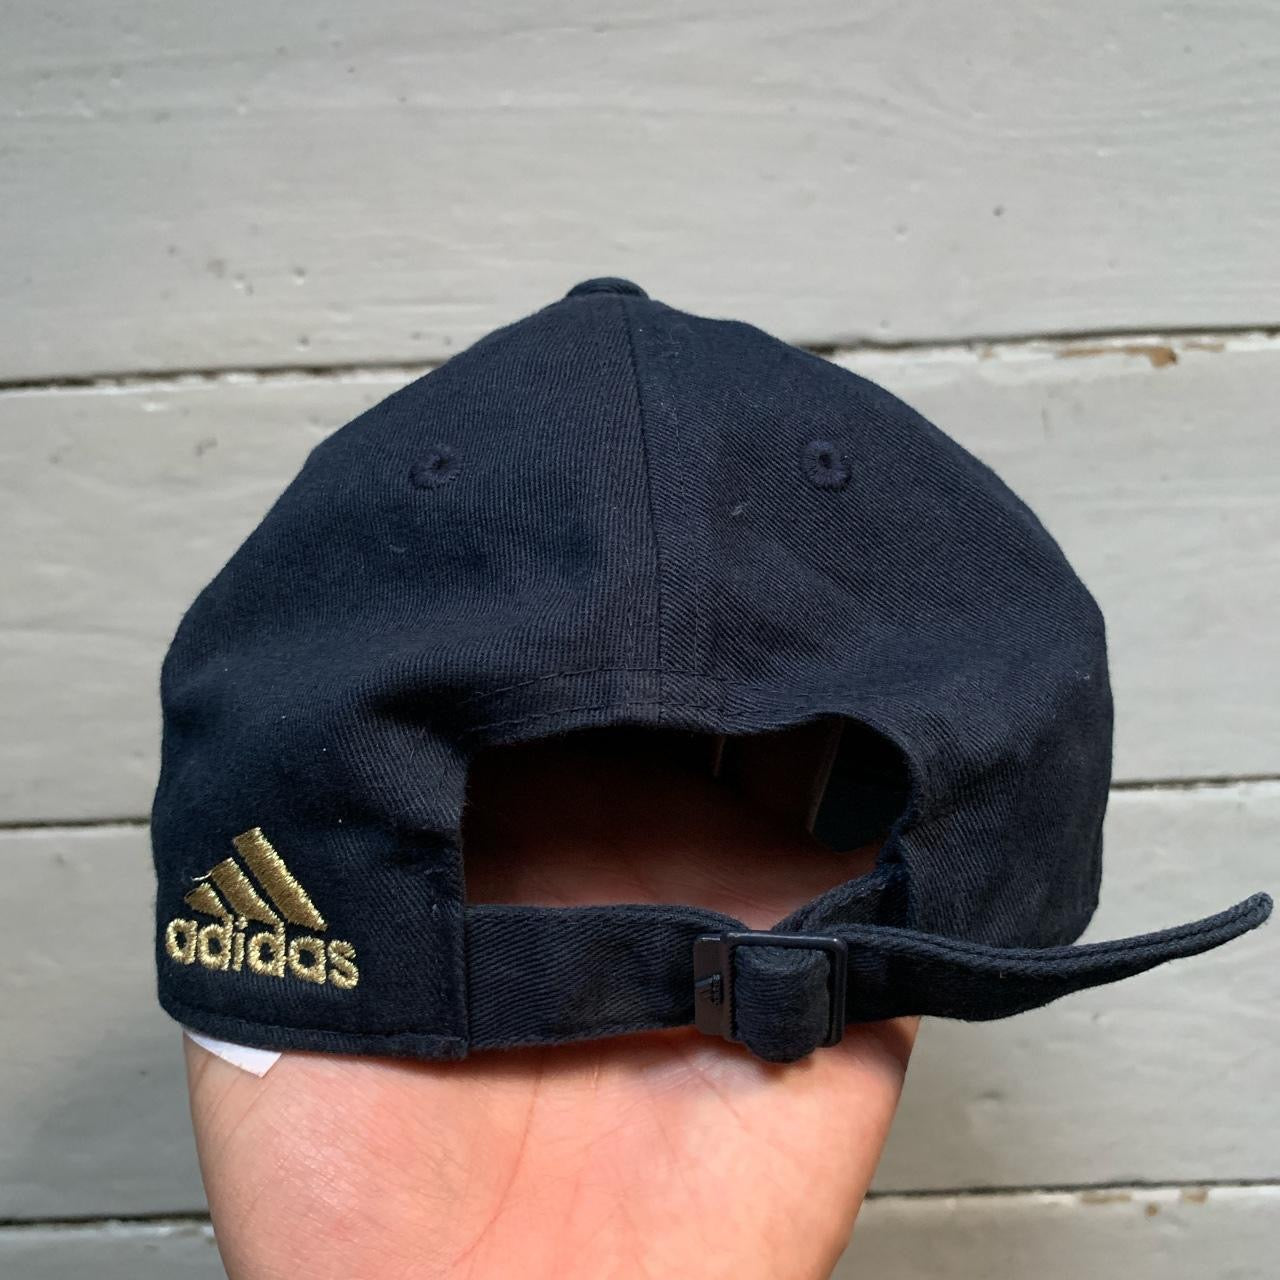 Leeds Adidas Cap